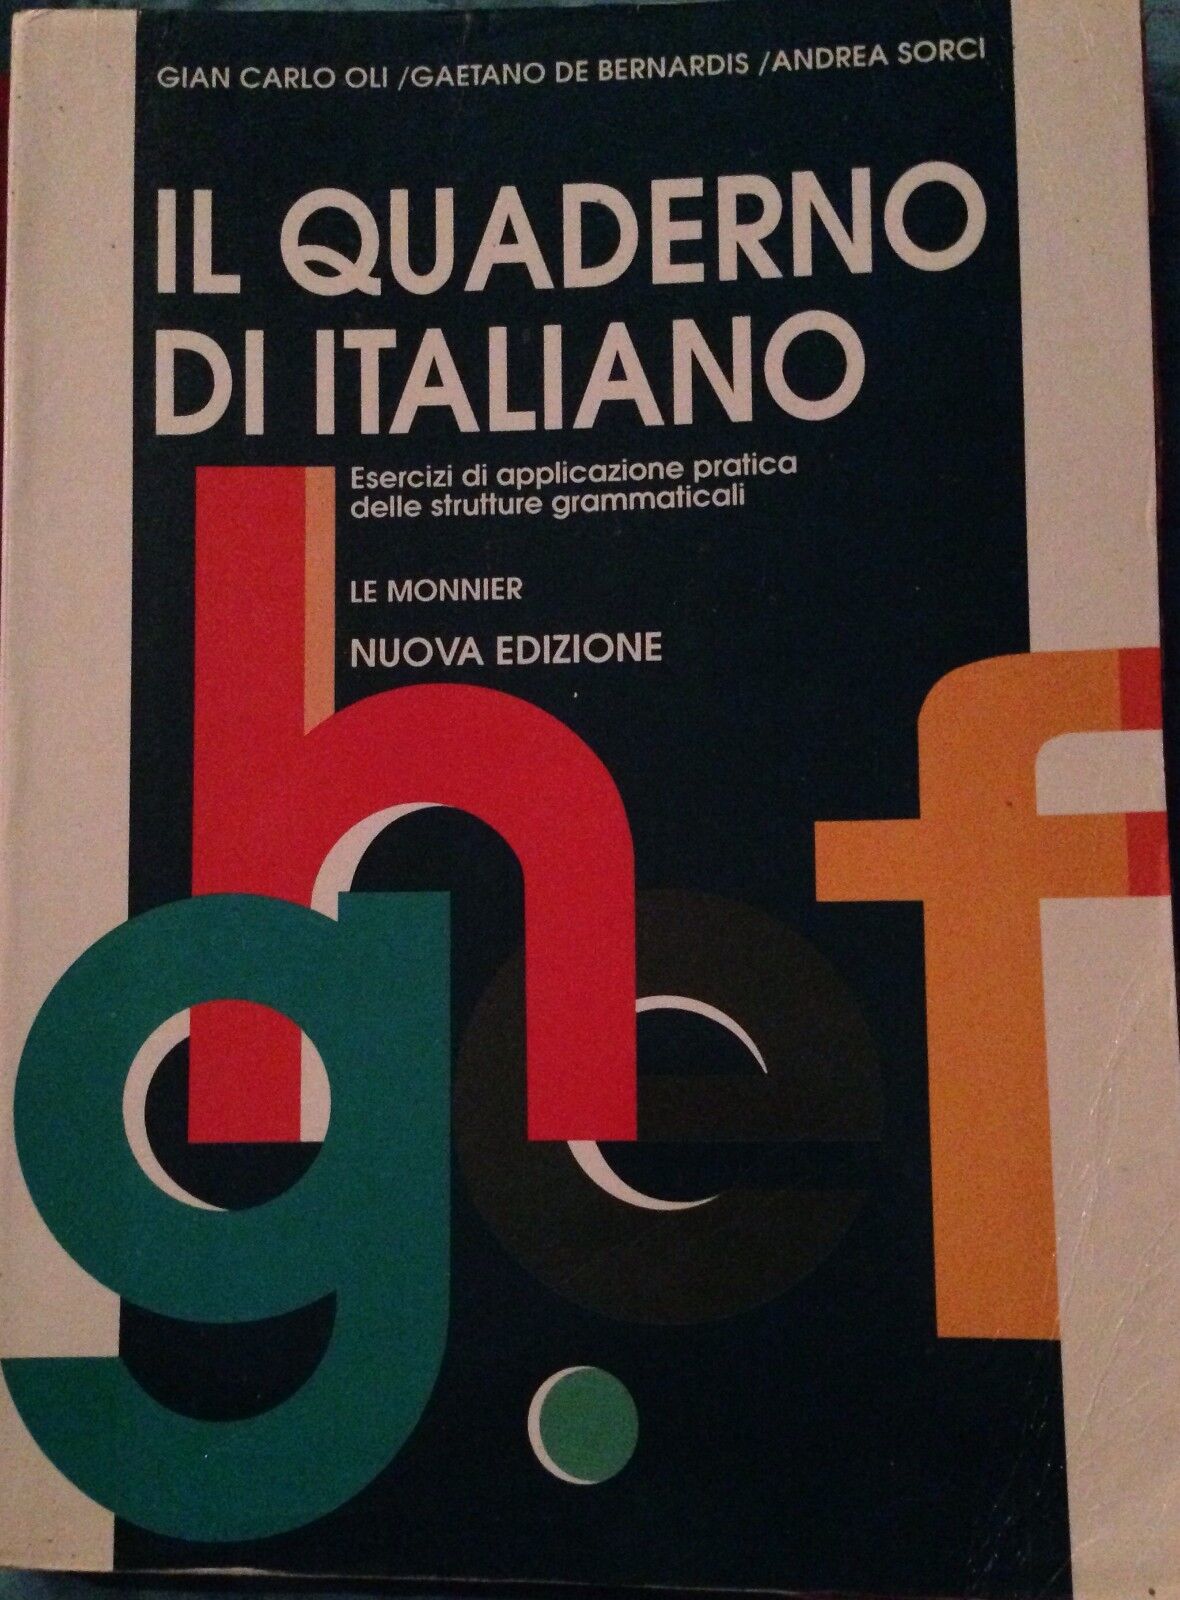 Il quaderno di Italiano - Gian Carlo Oli - Le Monnier - 1991 - MP libro usato